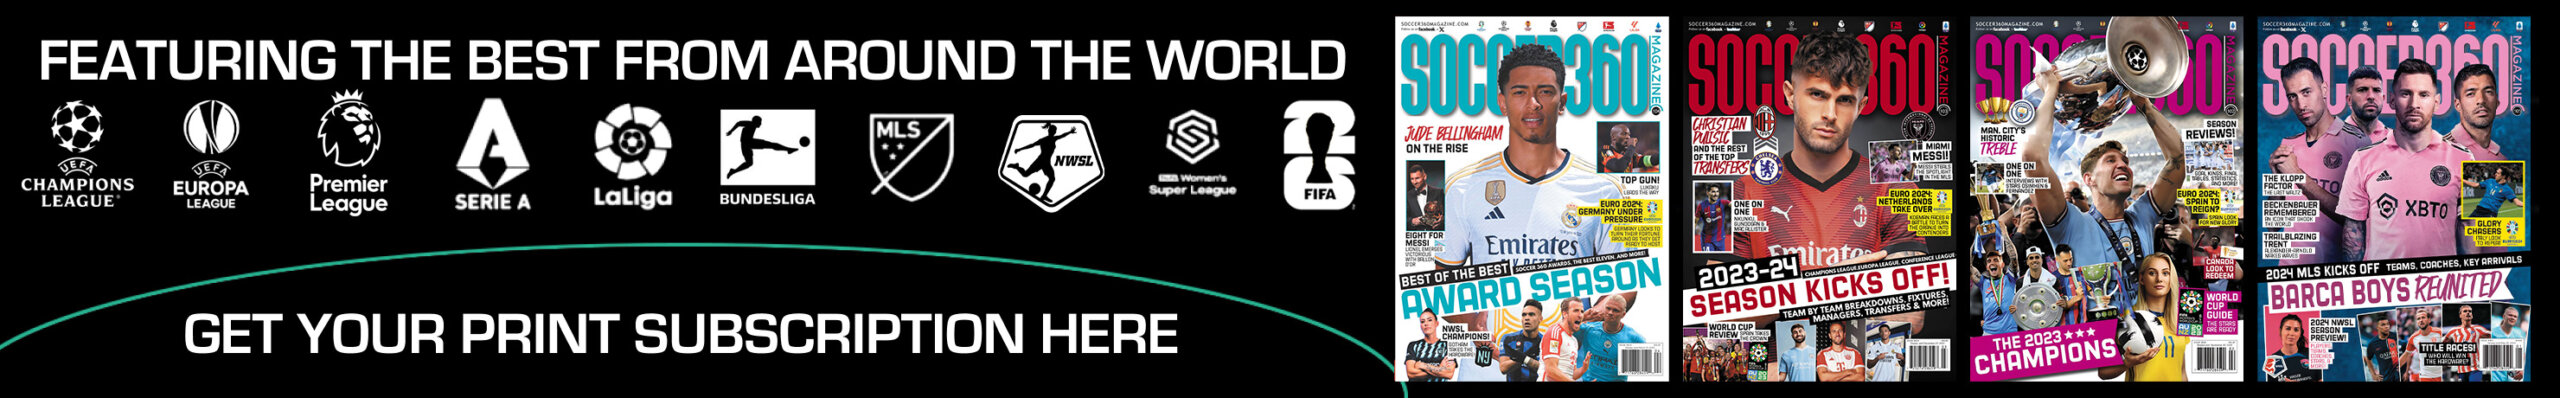 Soccer 360 Magazine Image